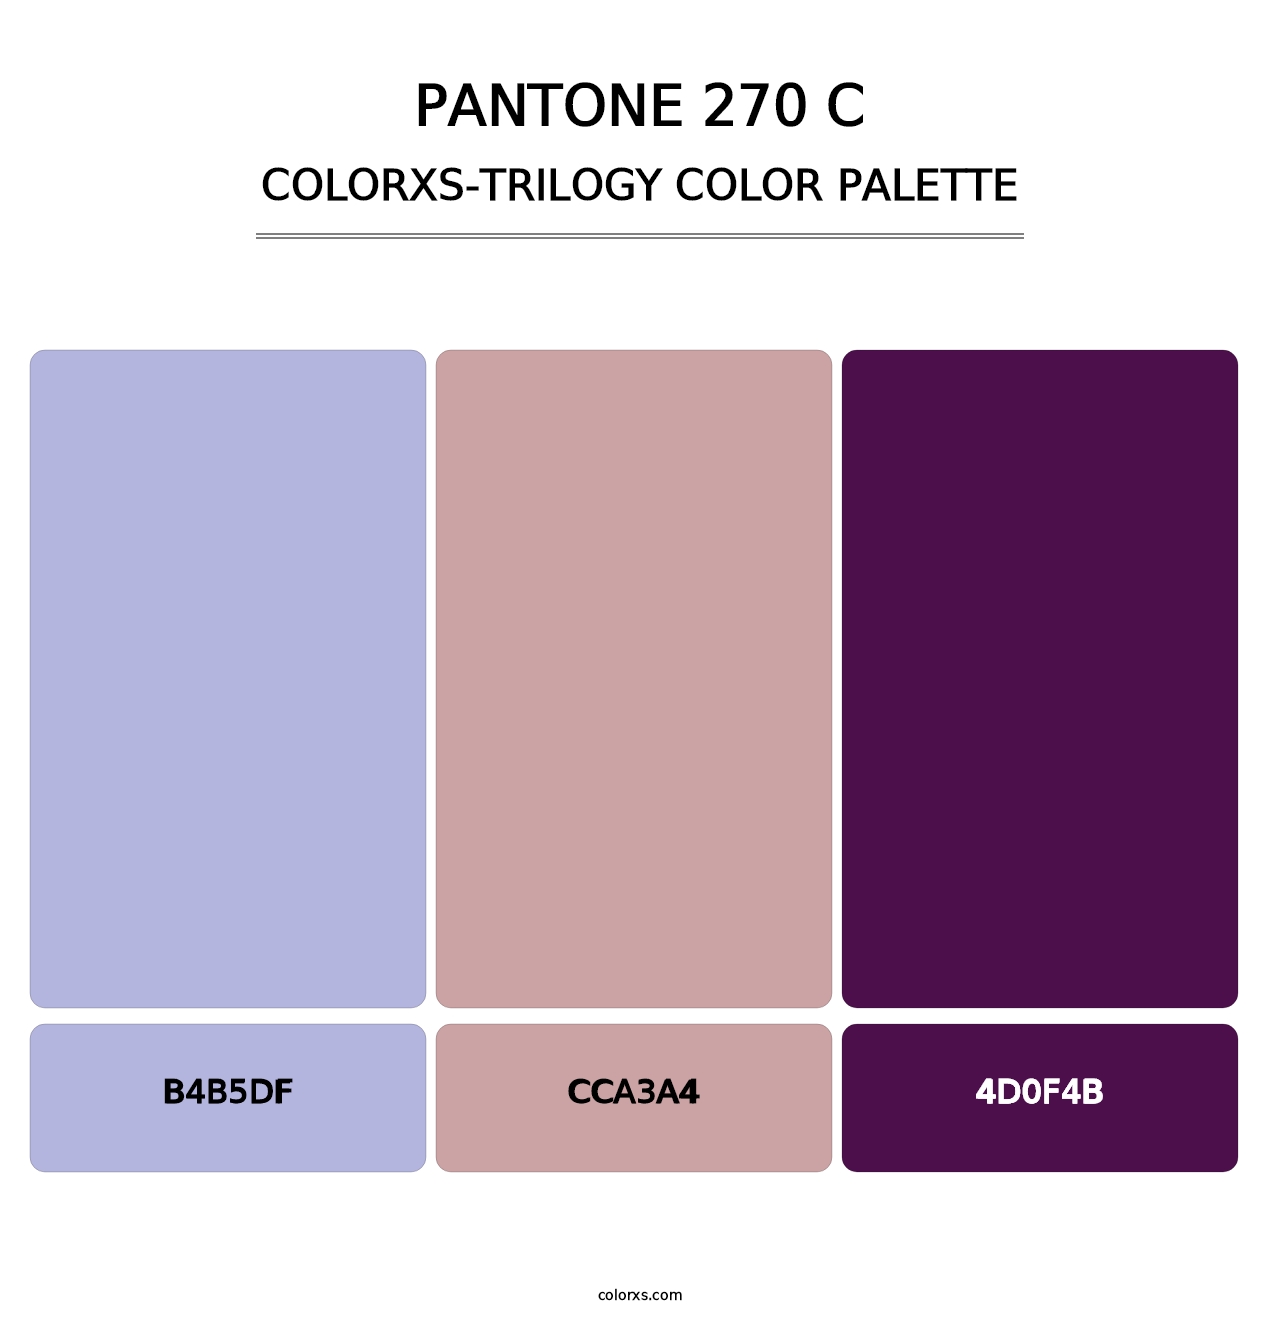 PANTONE 270 C - Colorxs Trilogy Palette